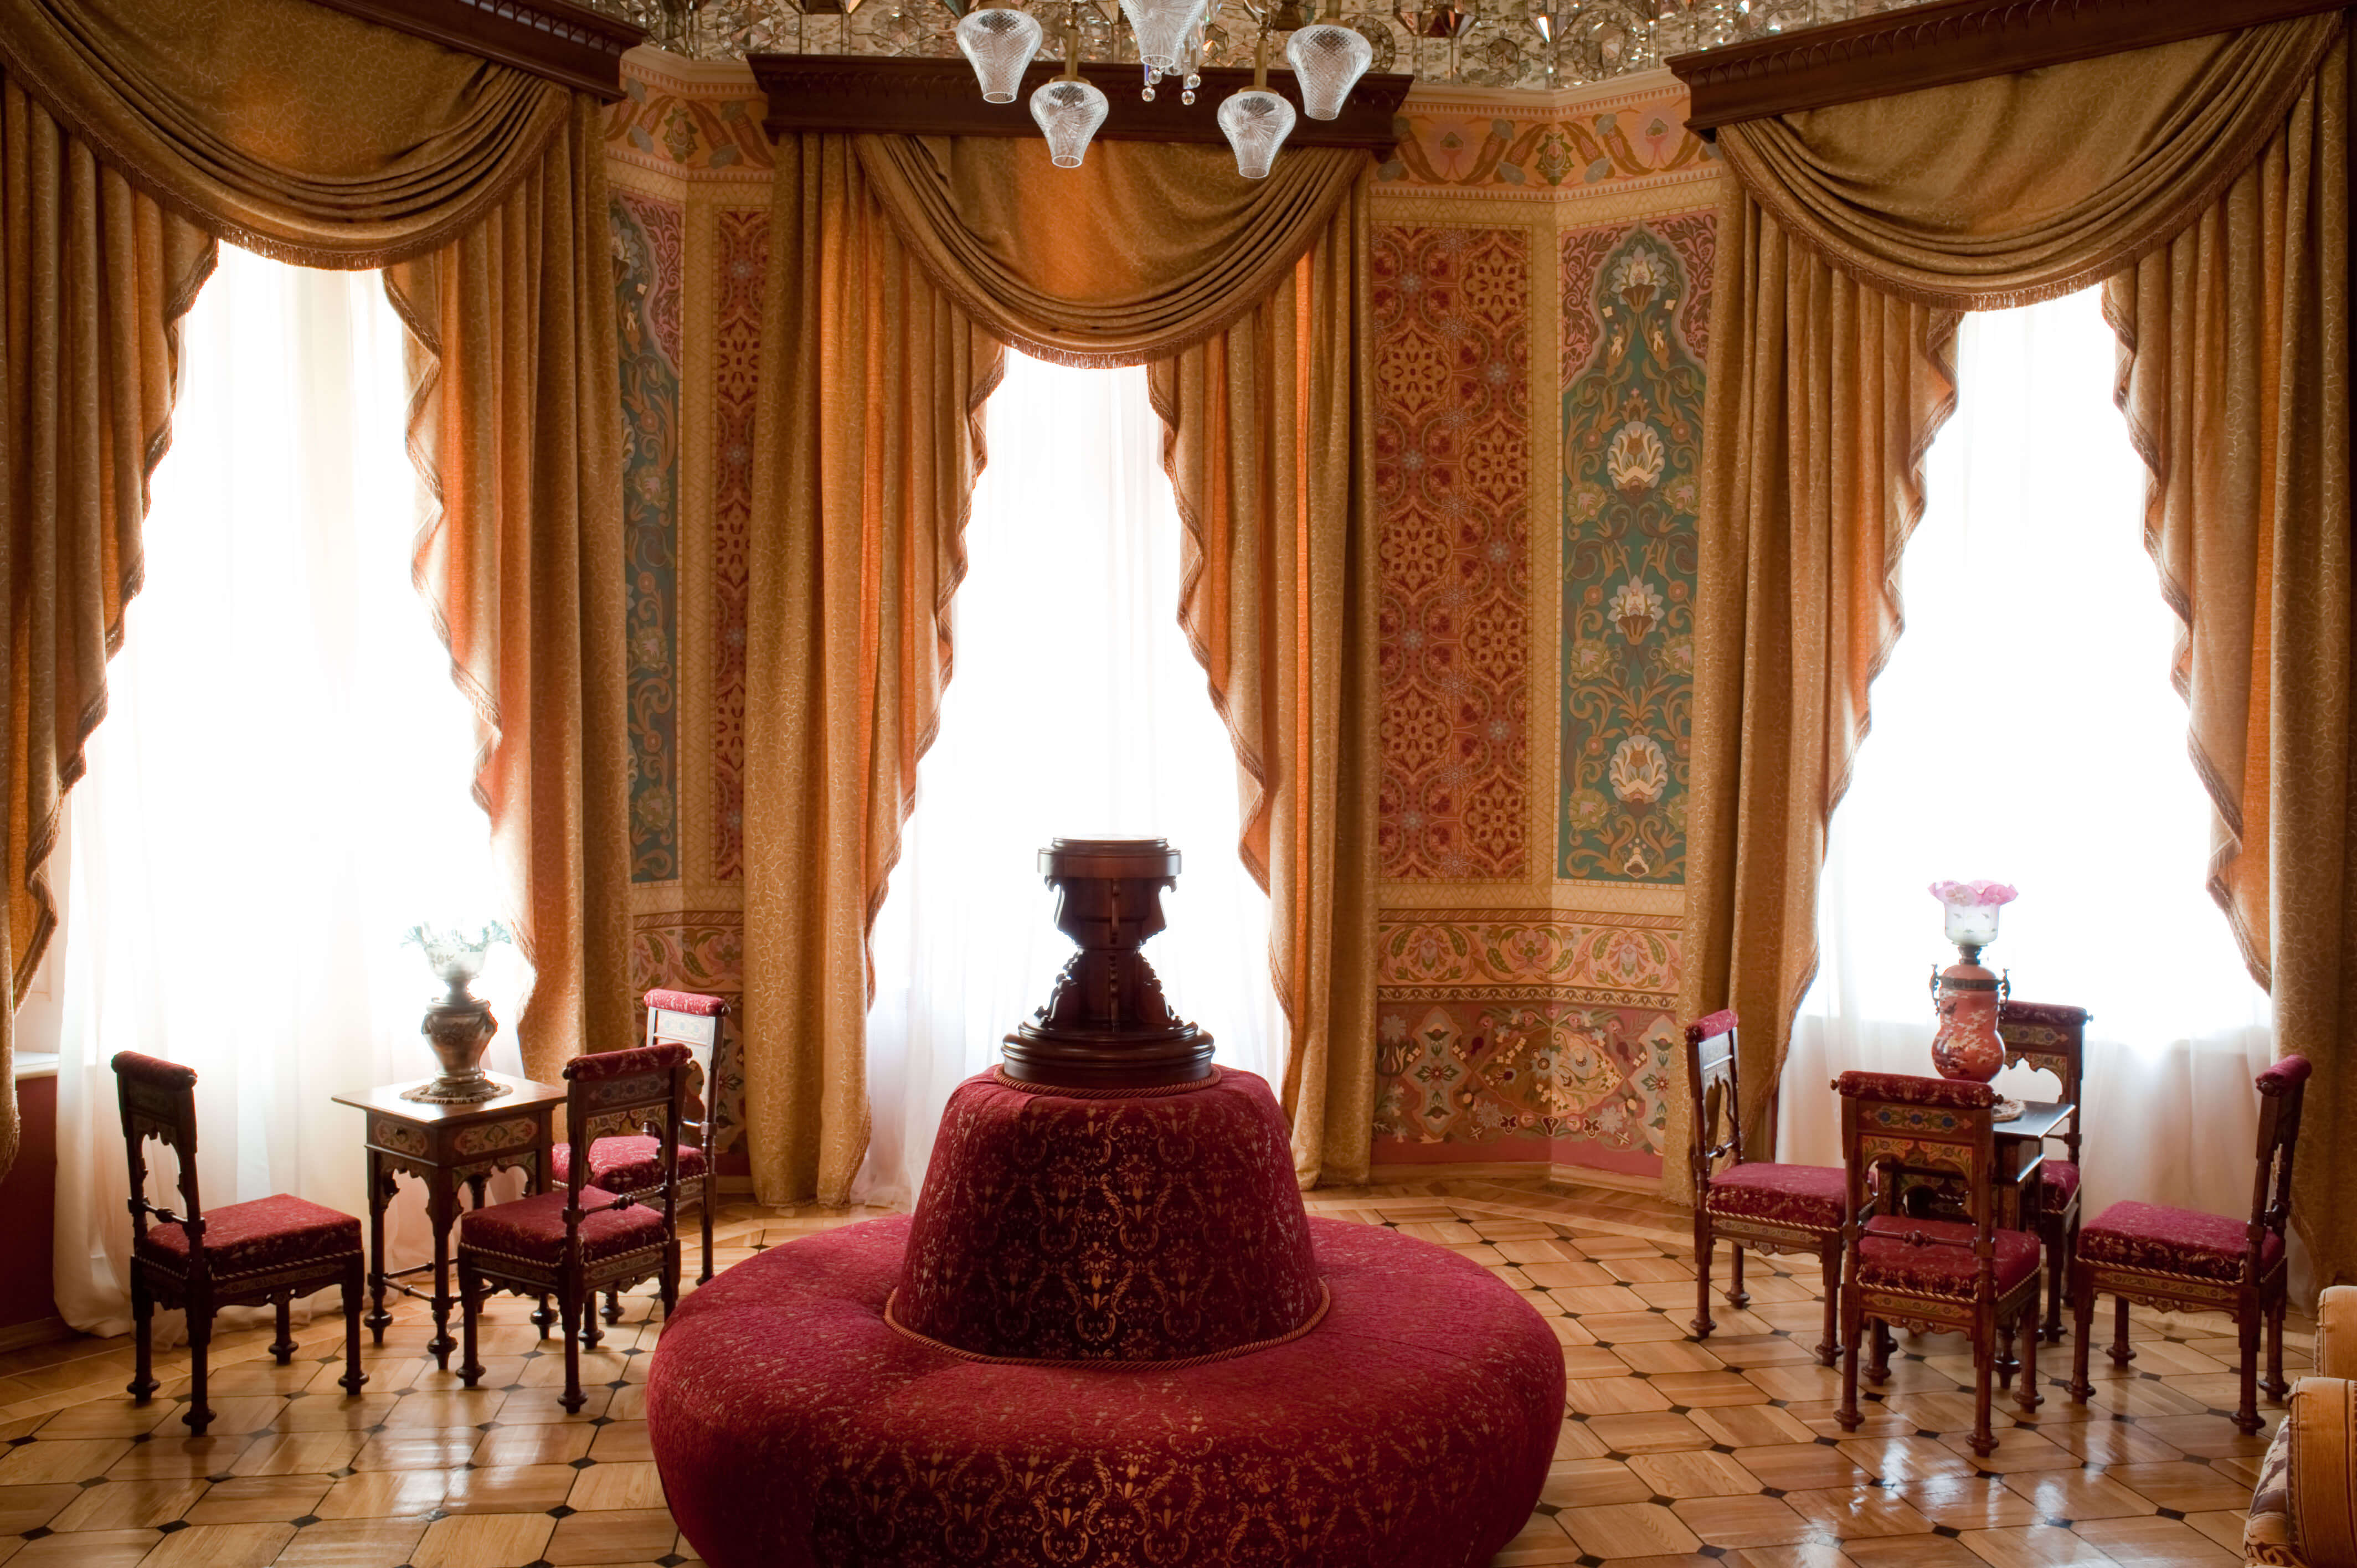 Inside Taghiyev palace